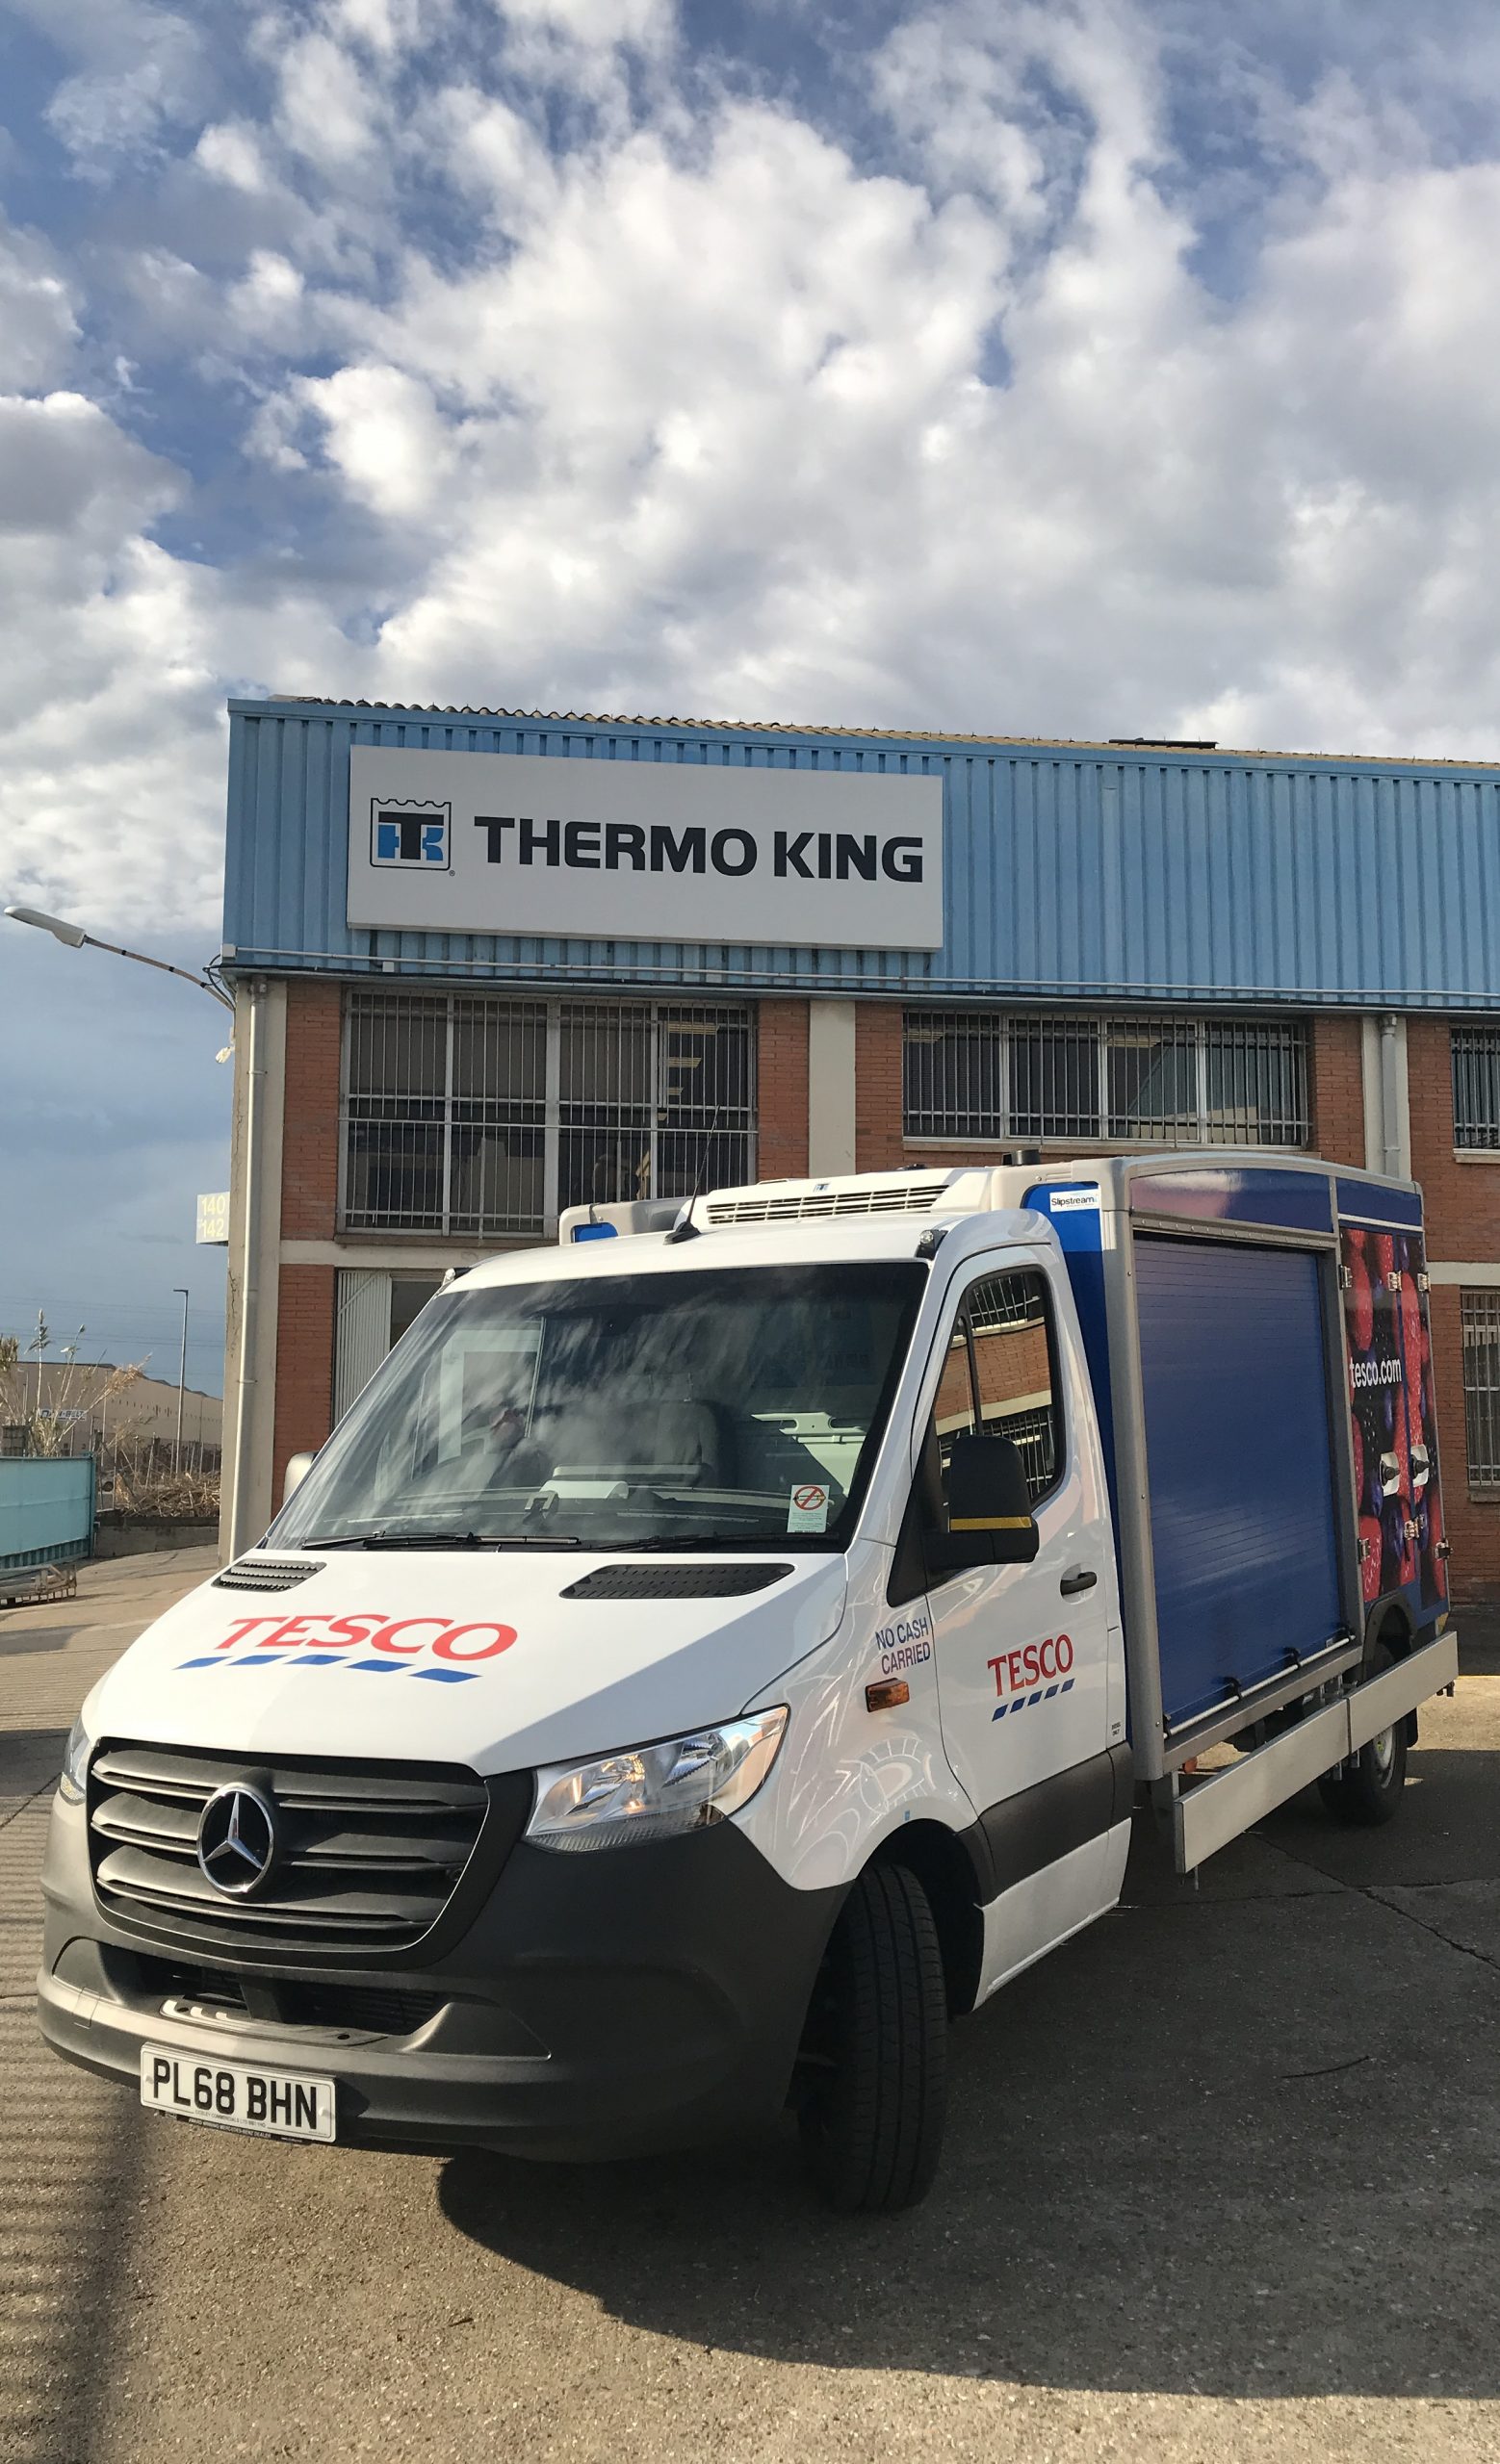 От дизеля к электричеству: автопарк Tesco оснастил фургоны холодильными установками E-200 от Thermo King